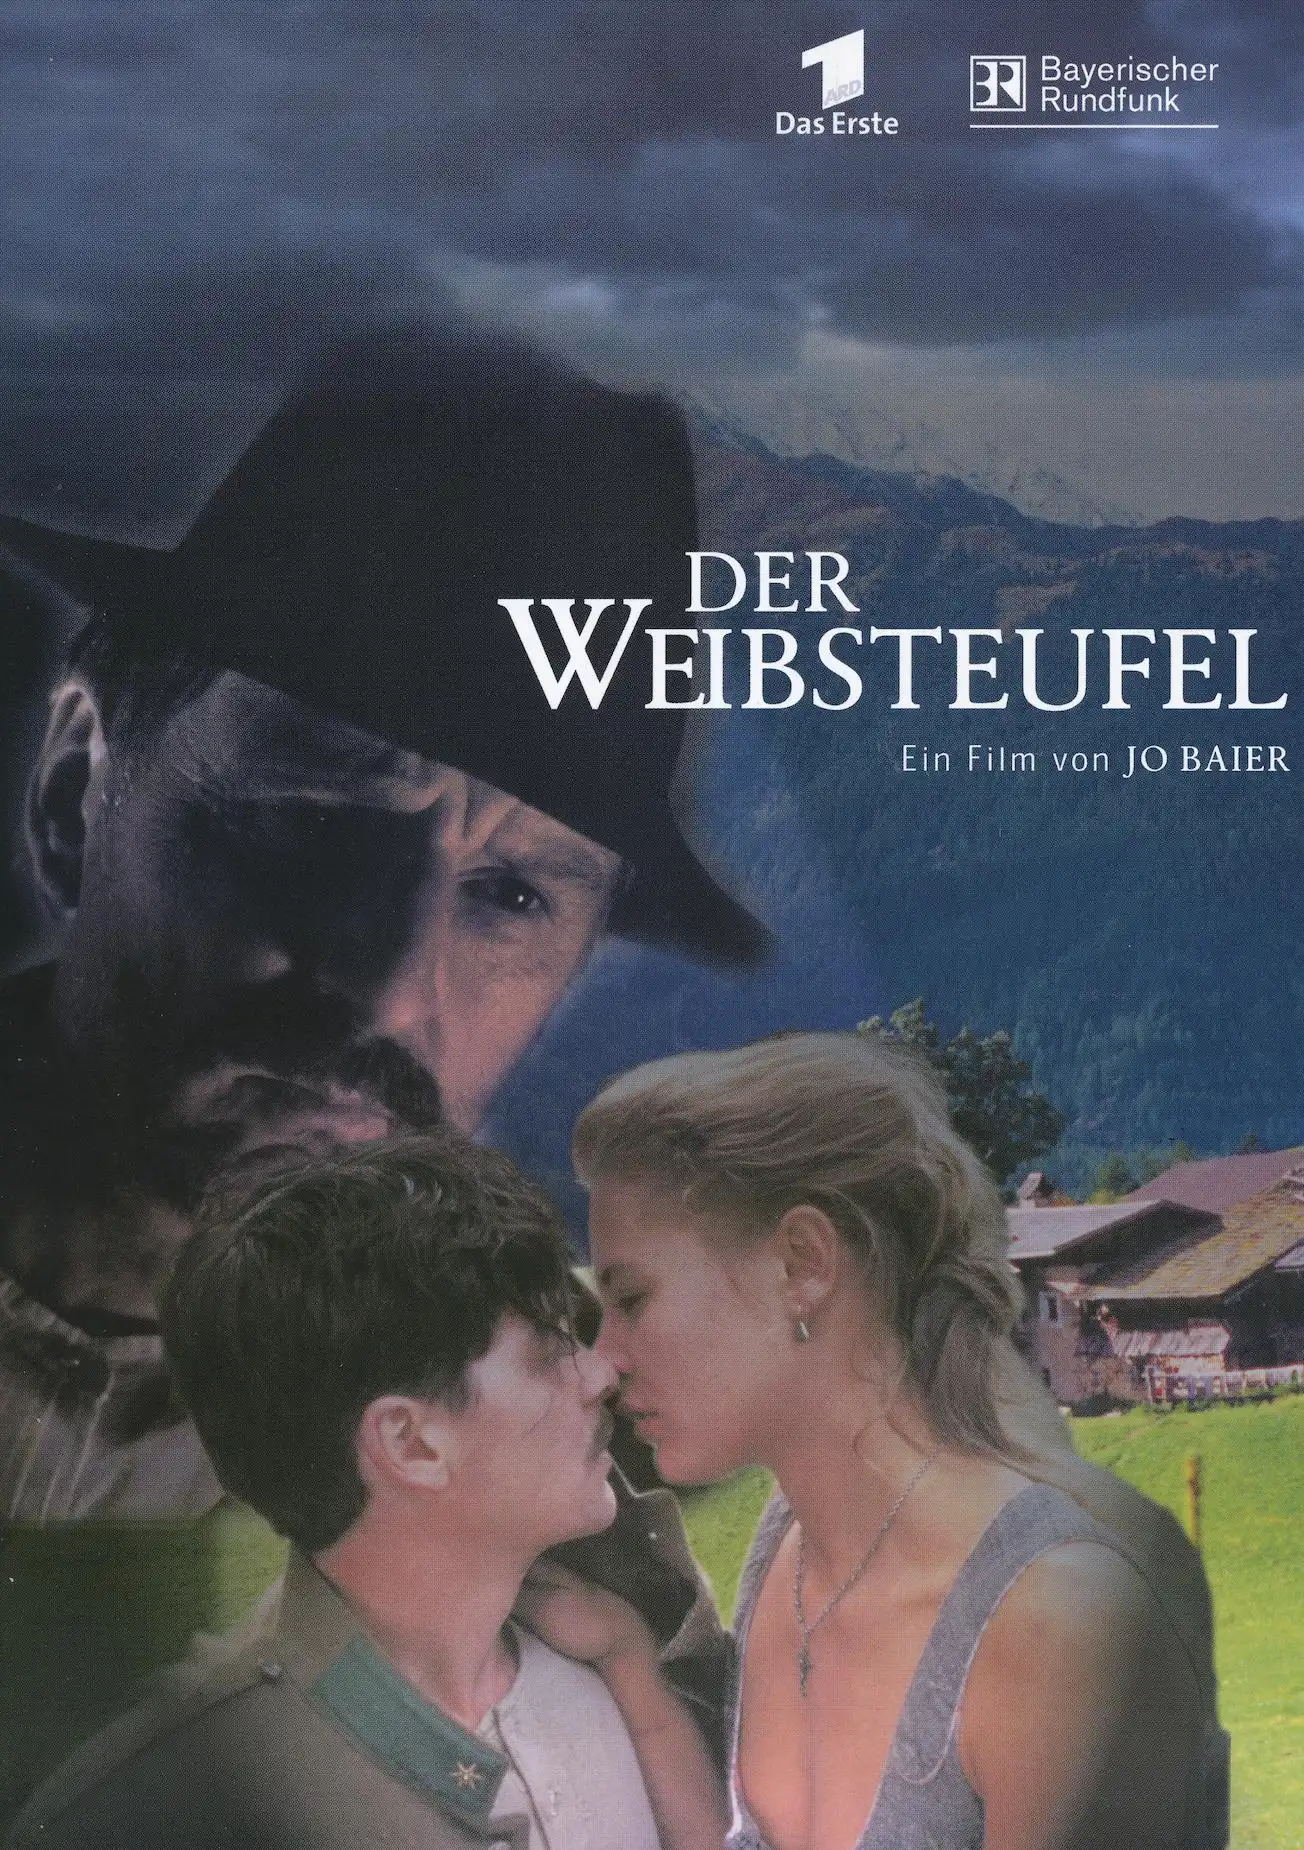 Watch and Download Der Weibsteufel 1